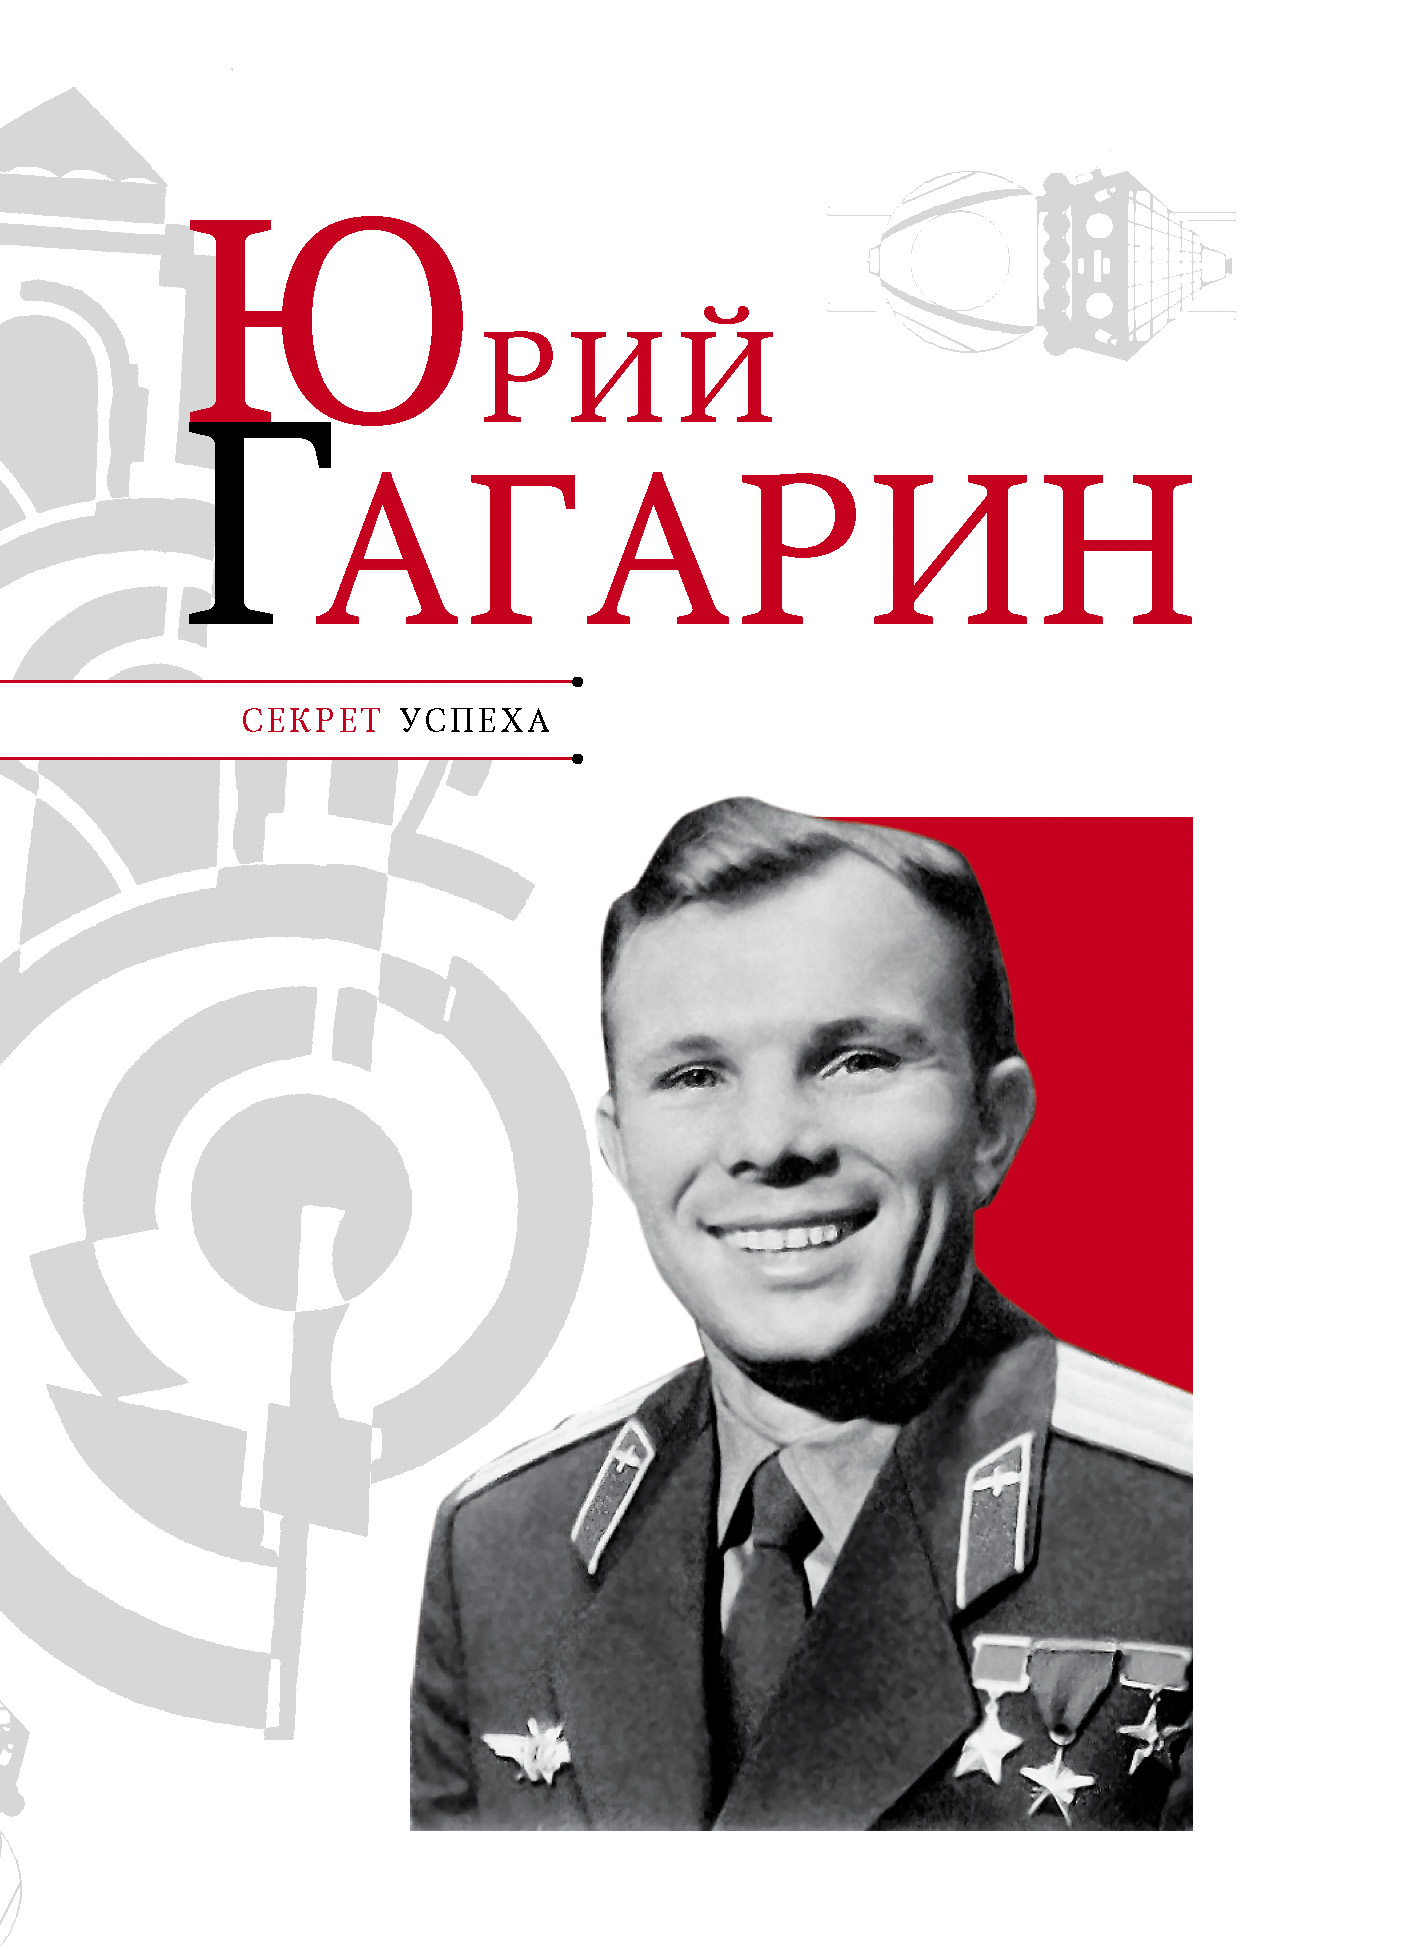 Книга Юрий Гагарин из серии , созданная Николай Надеждин, может относится к жанру Биографии и Мемуары. Стоимость электронной книги Юрий Гагарин с идентификатором 5973140 составляет 89.90 руб.